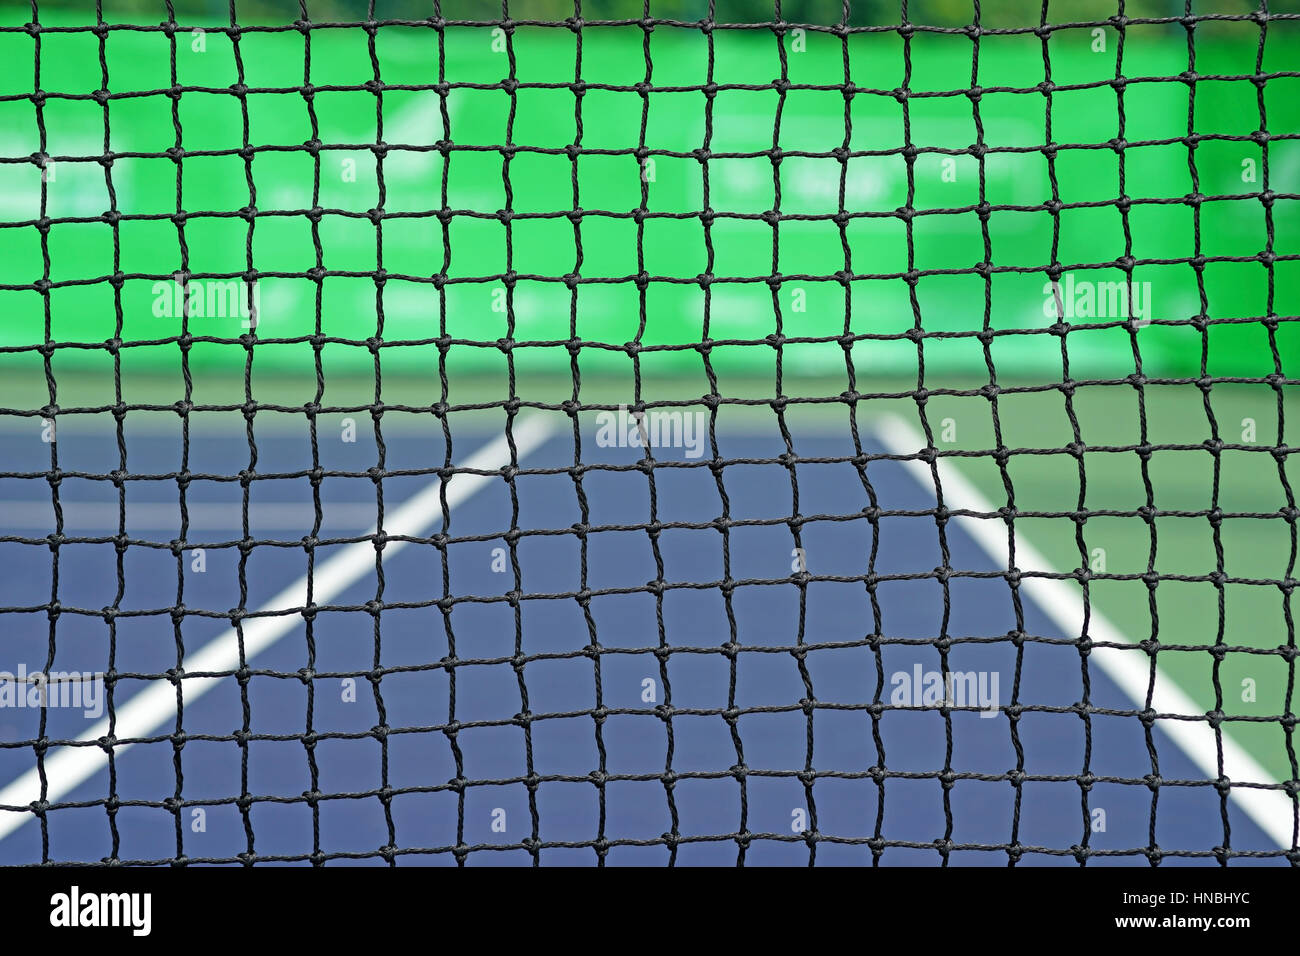 Gros plan de l'net en court de tennis Banque D'Images